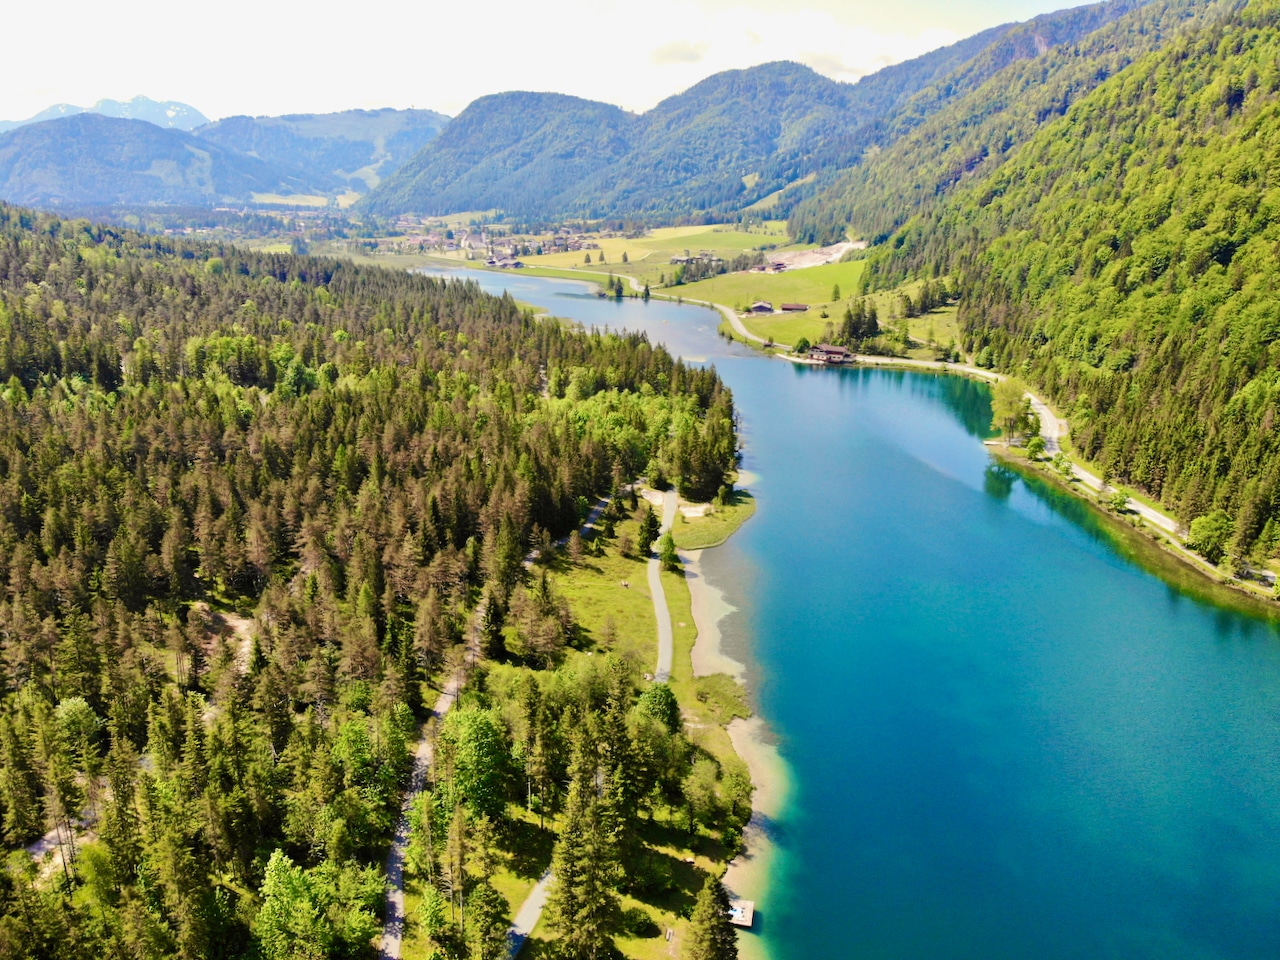 Het ongeveer 24 hectare grote bergmeer, gelegen in het charmante Pillerseetal nabij de gemeente St. Ulrich am Pillersee op een hoogte van 835 meter, is een echte attractie voor zowel lokale bewoners als bezoekers.